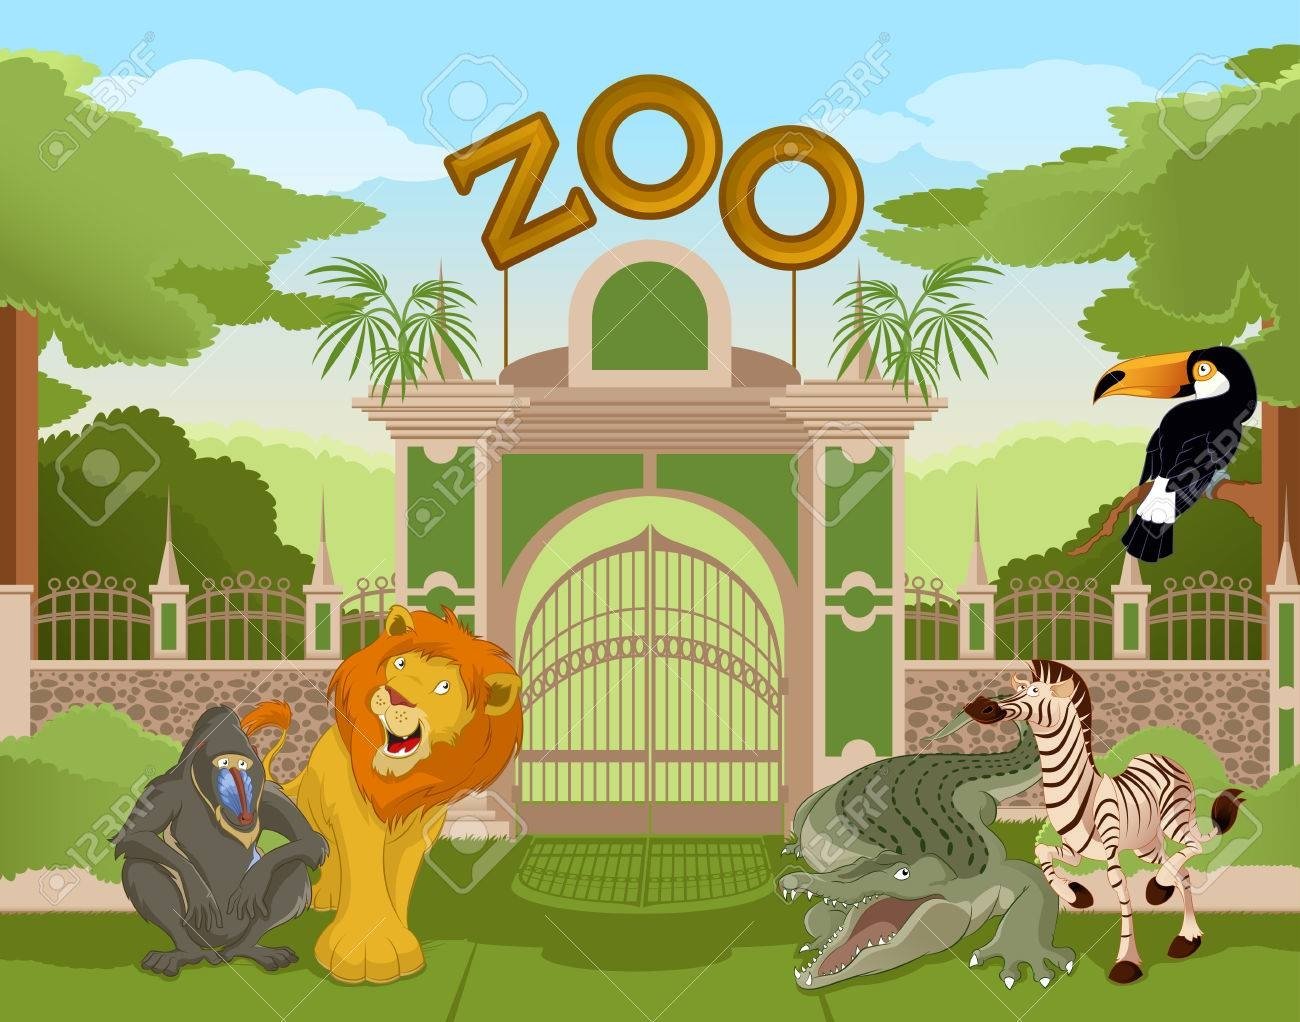 Ворота в зоопарк мультяш